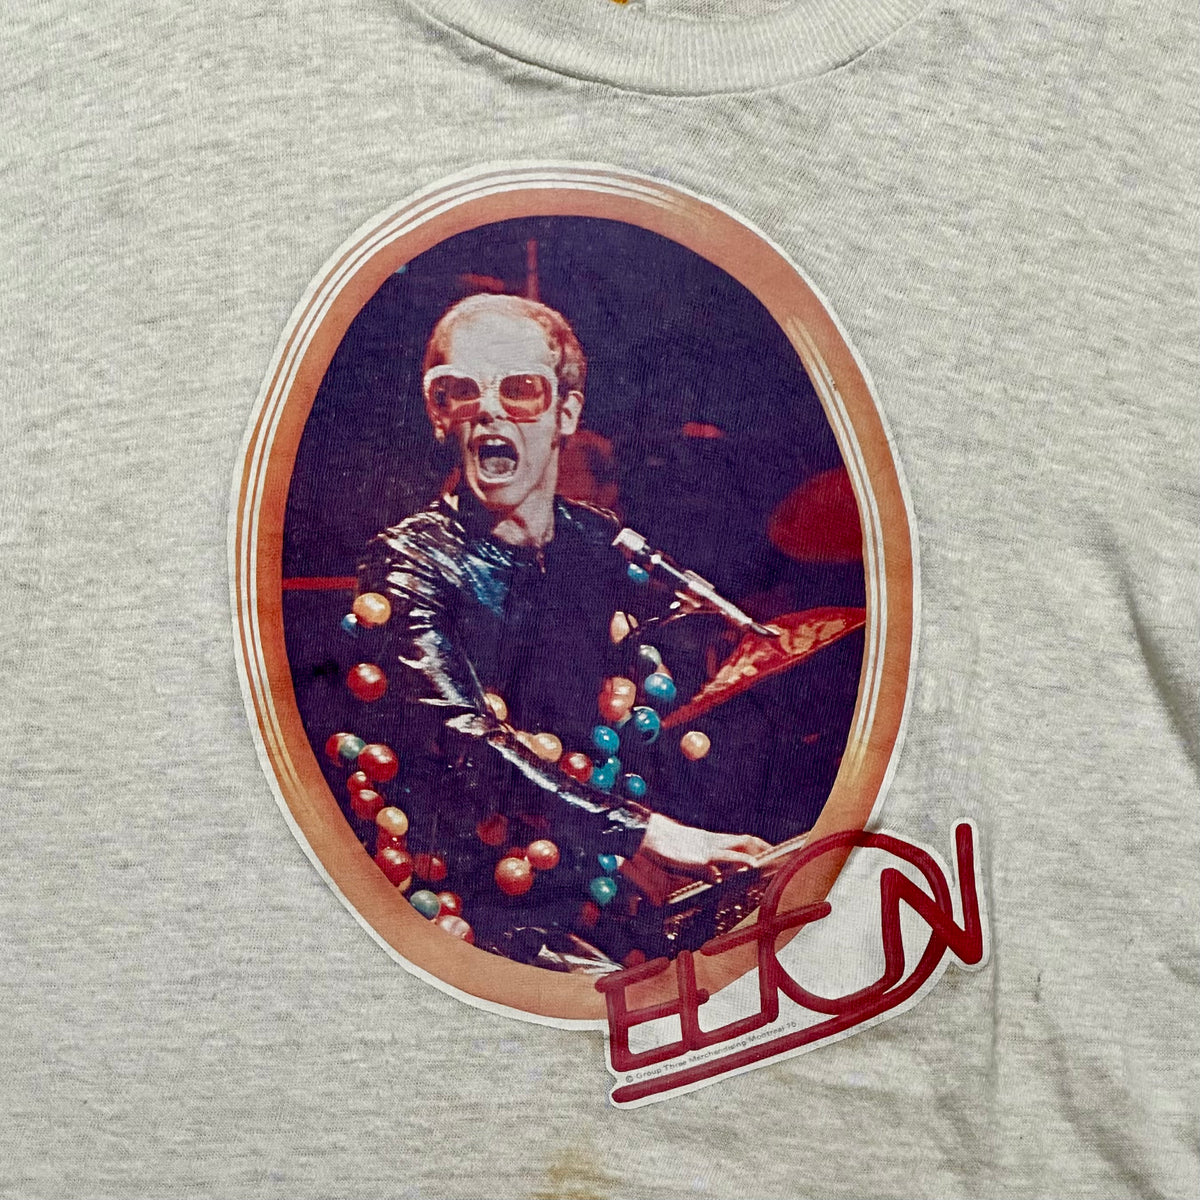 Vintage 70s Elton John Tour T-Shirt